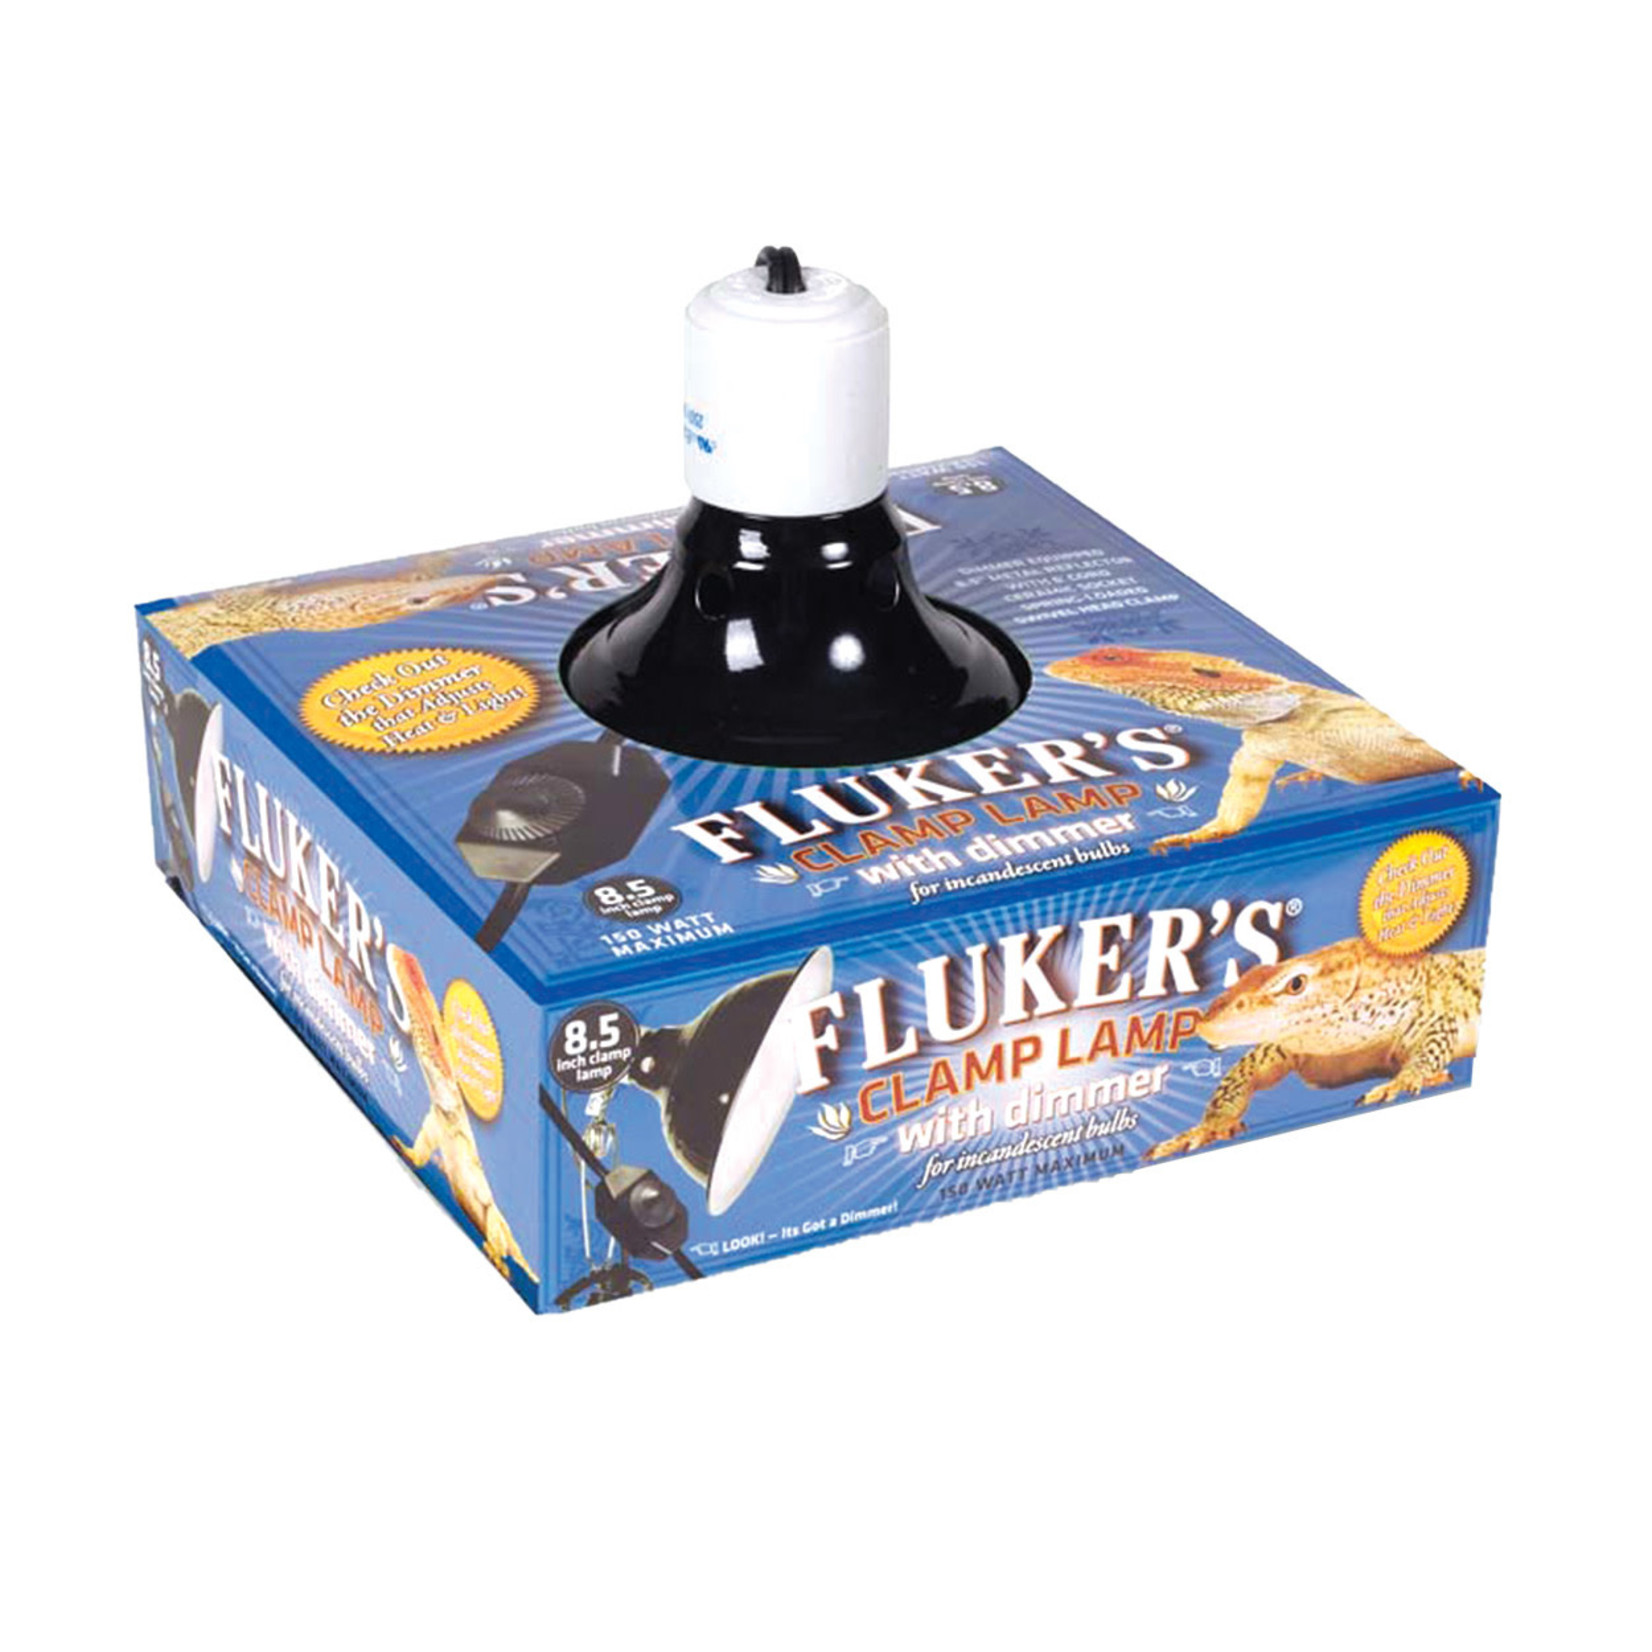 FLUKER'S (W) Fluker's Clamp Lamp with Dimmer - 8.5"